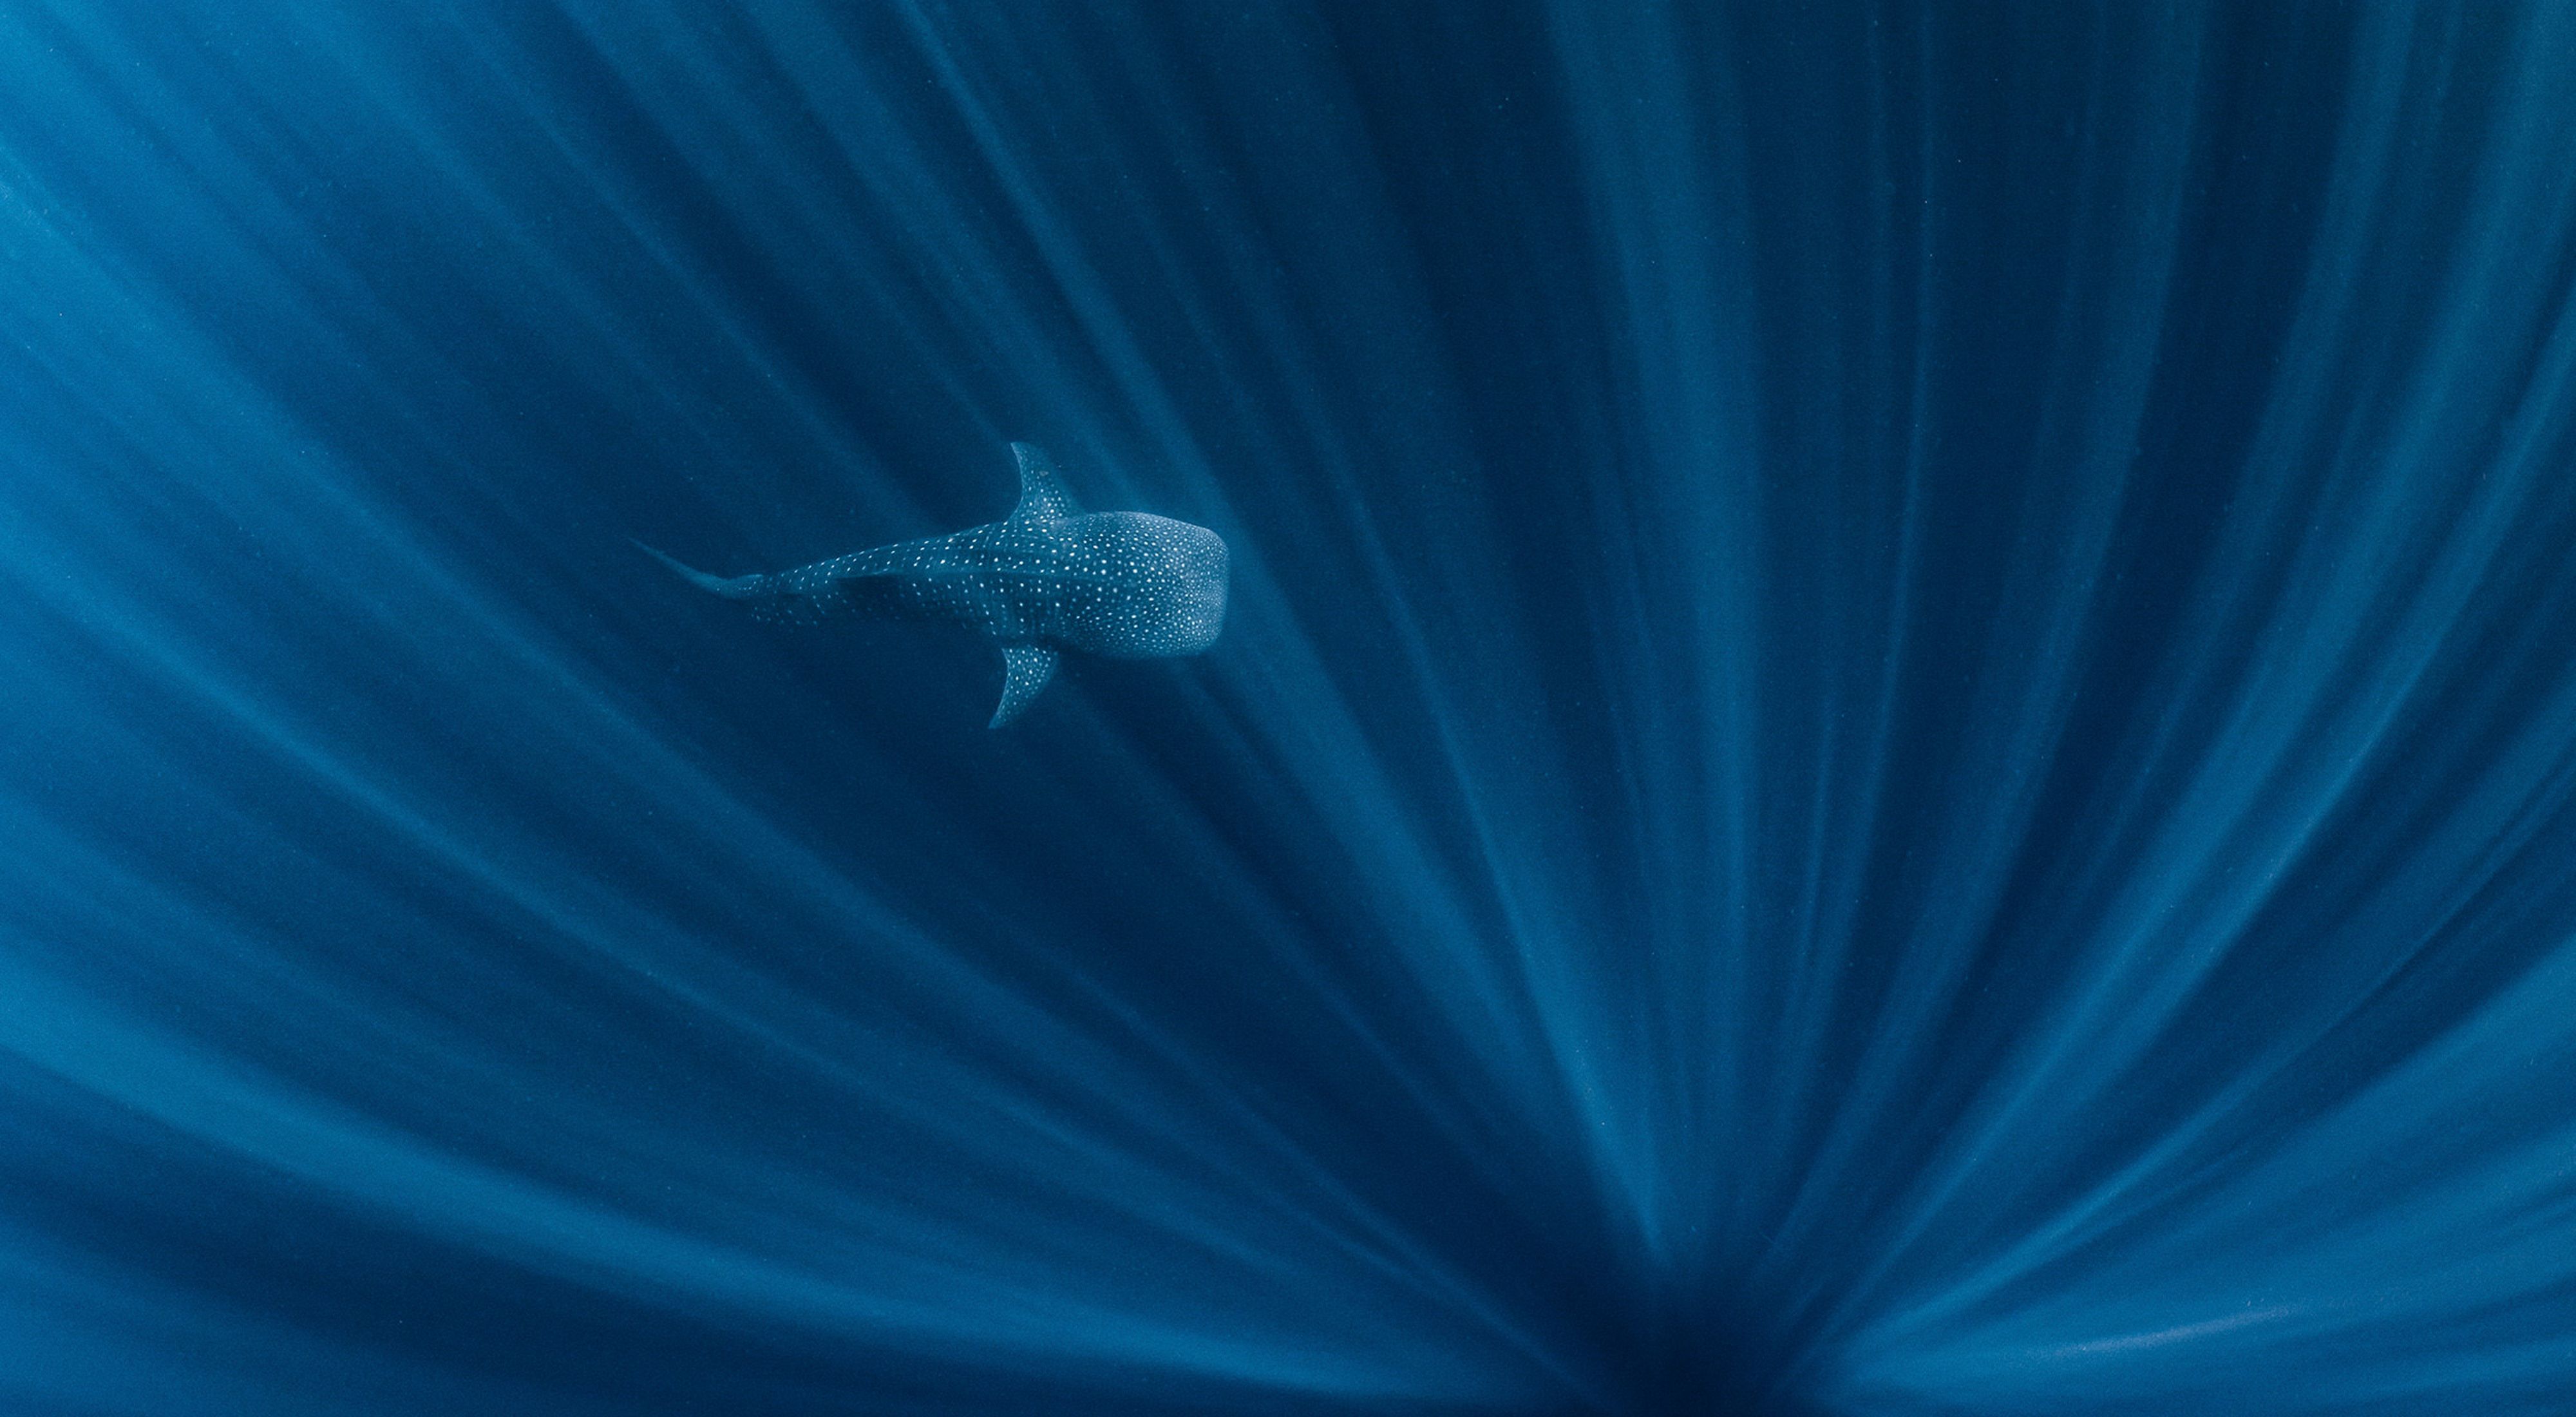 Un tiburón ballena nadando en aguas profundas con rayos de luz.